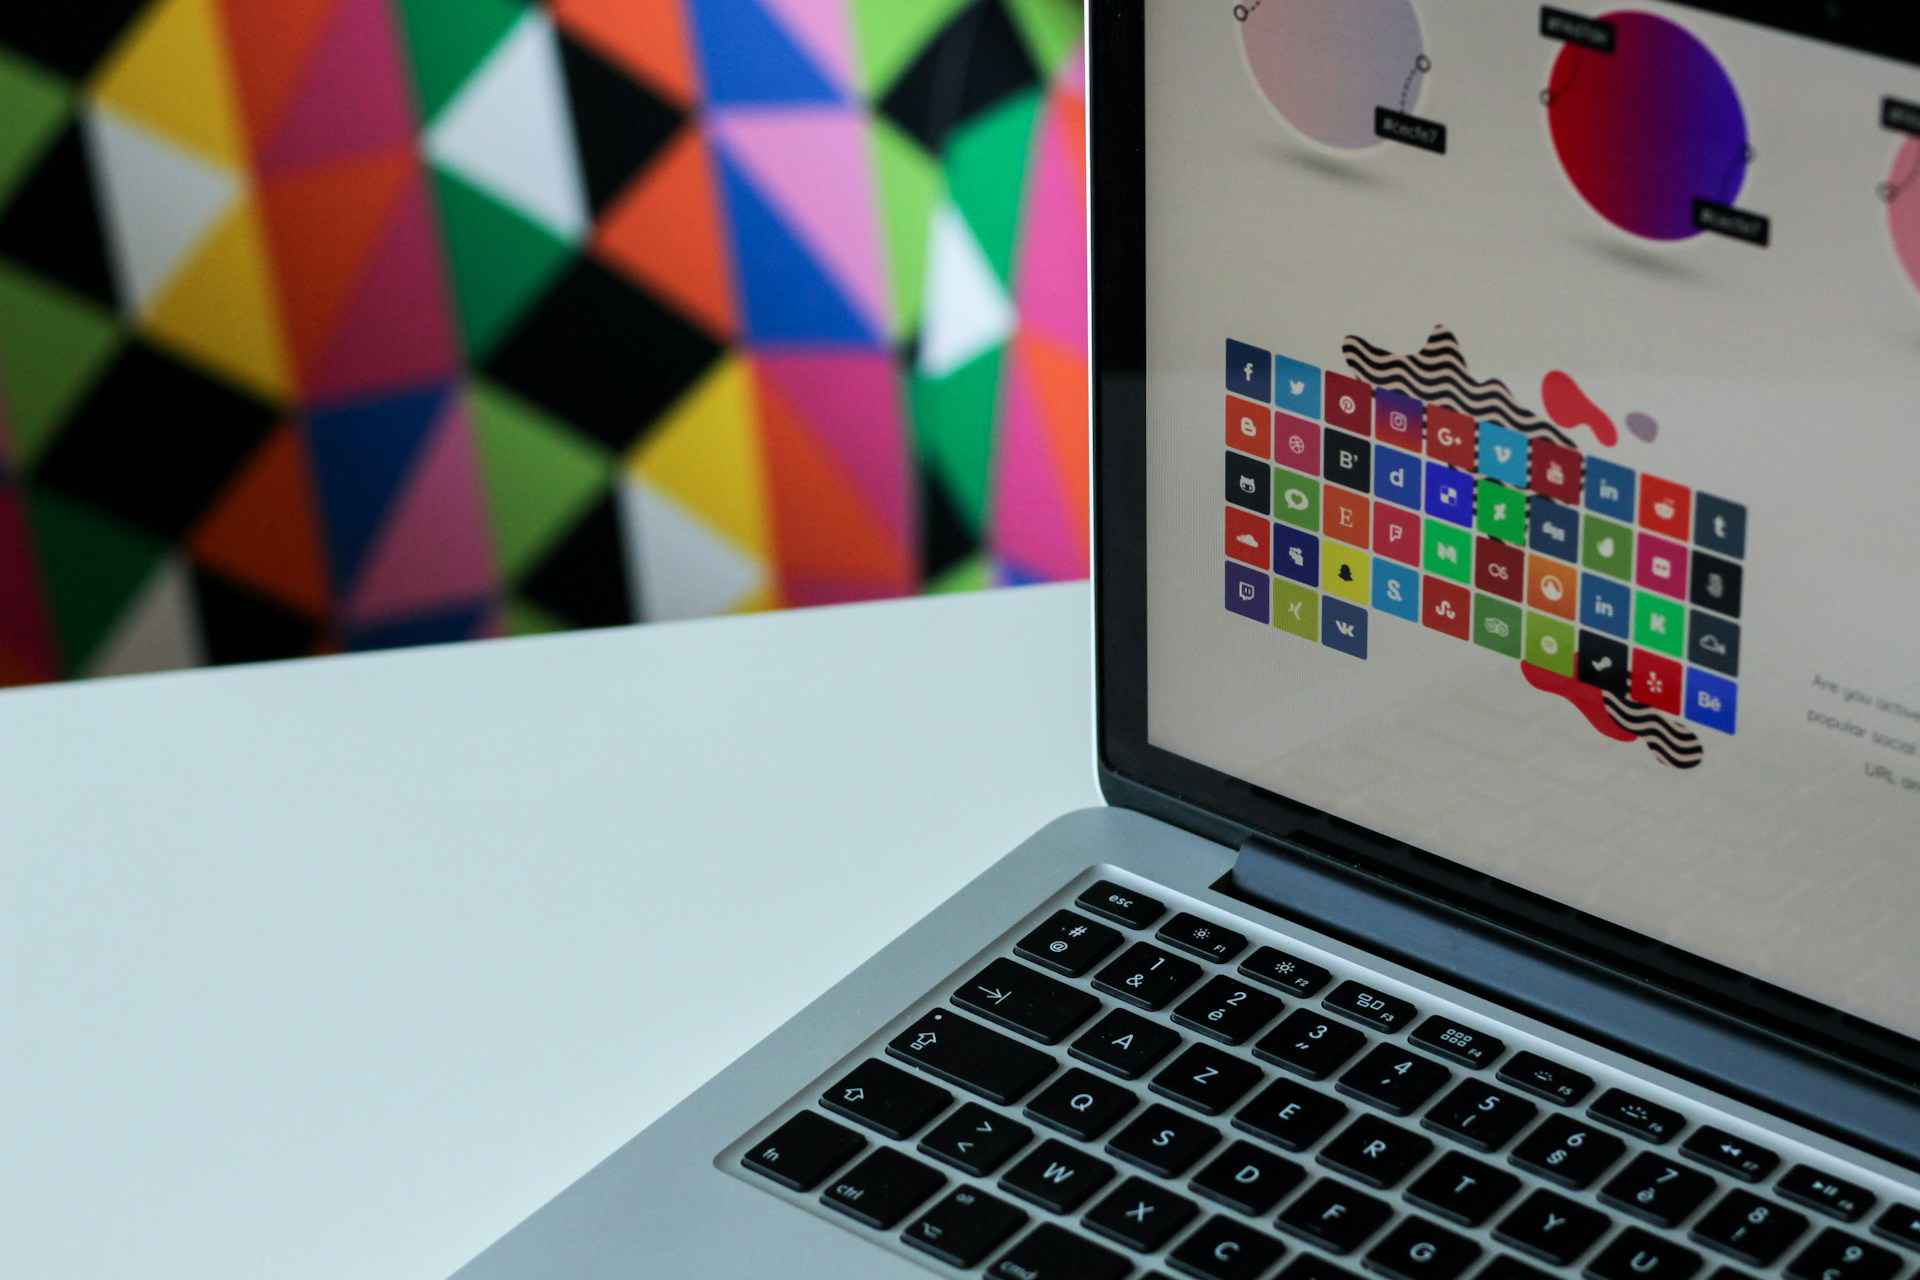 Un laptop abierto mostrando una presentación de sistemas de diseño con una serie de colores y bloques de construcción de interfaz de usuario en la pantalla, sugiriendo la planificación y estructura detrás del diseño de productos digitales.